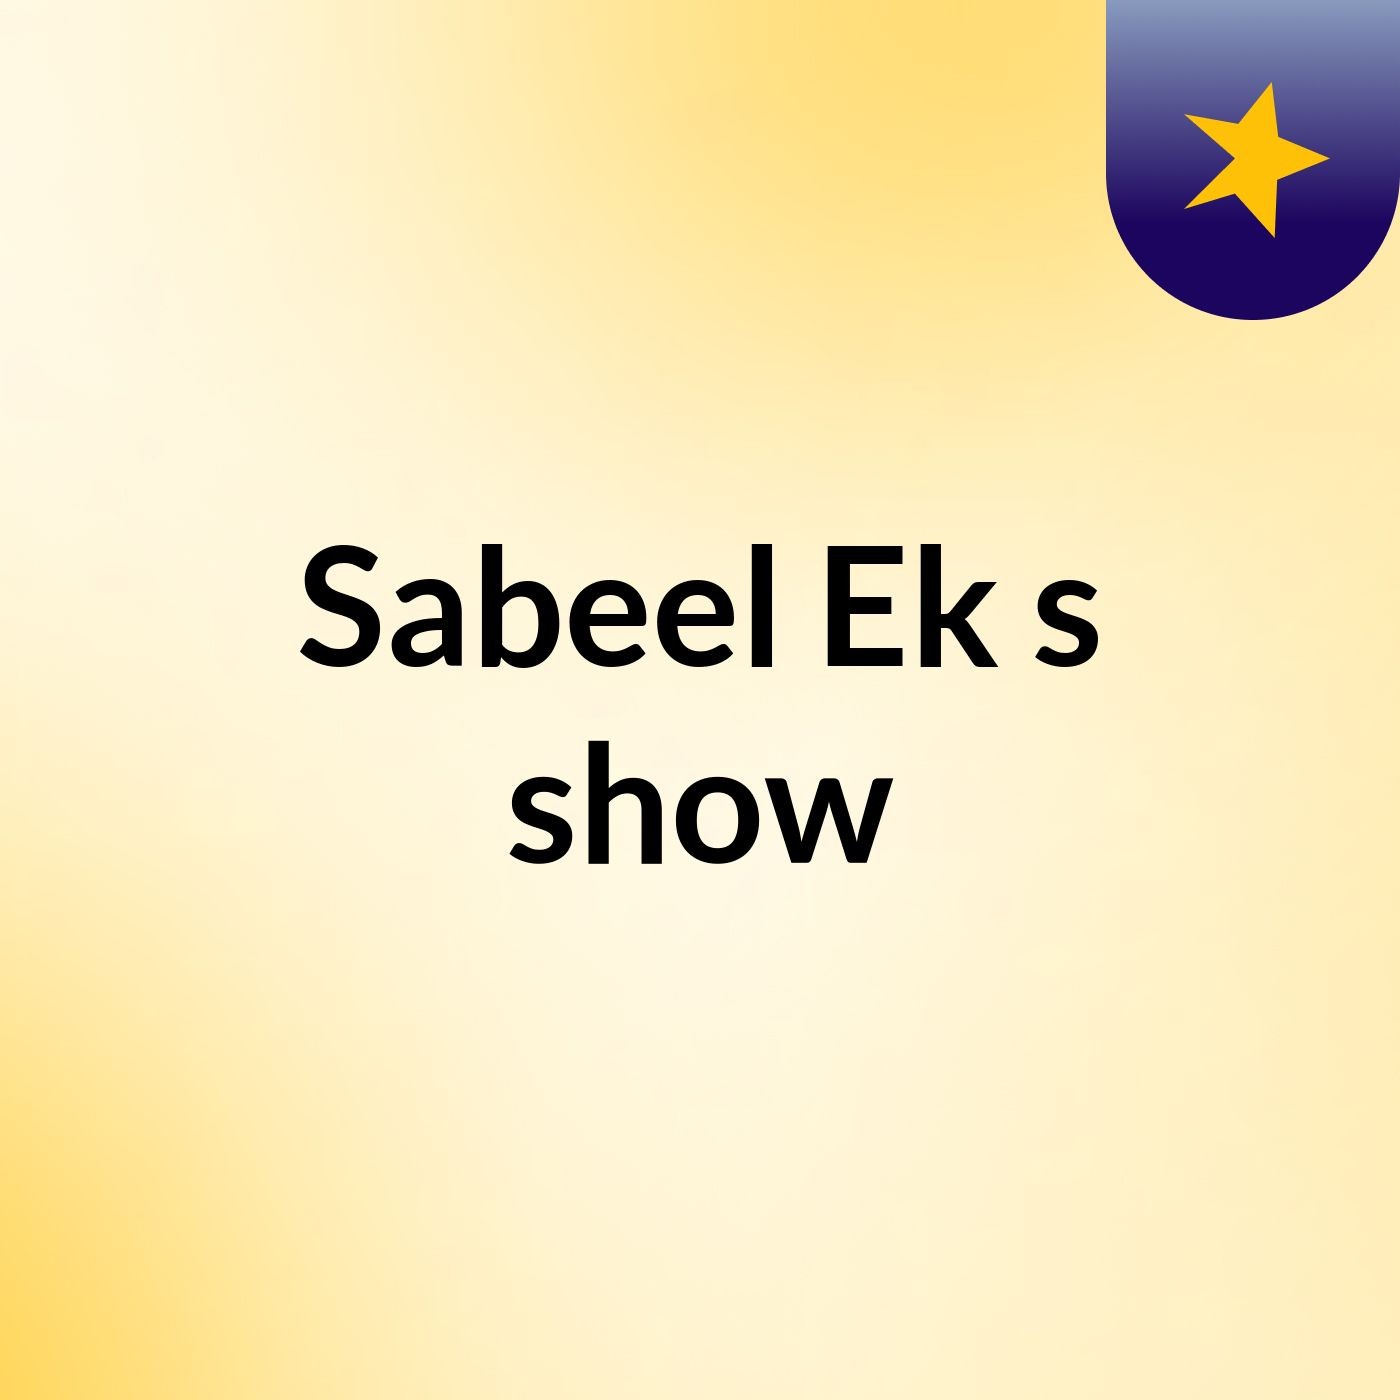 Sabeel Ek's show